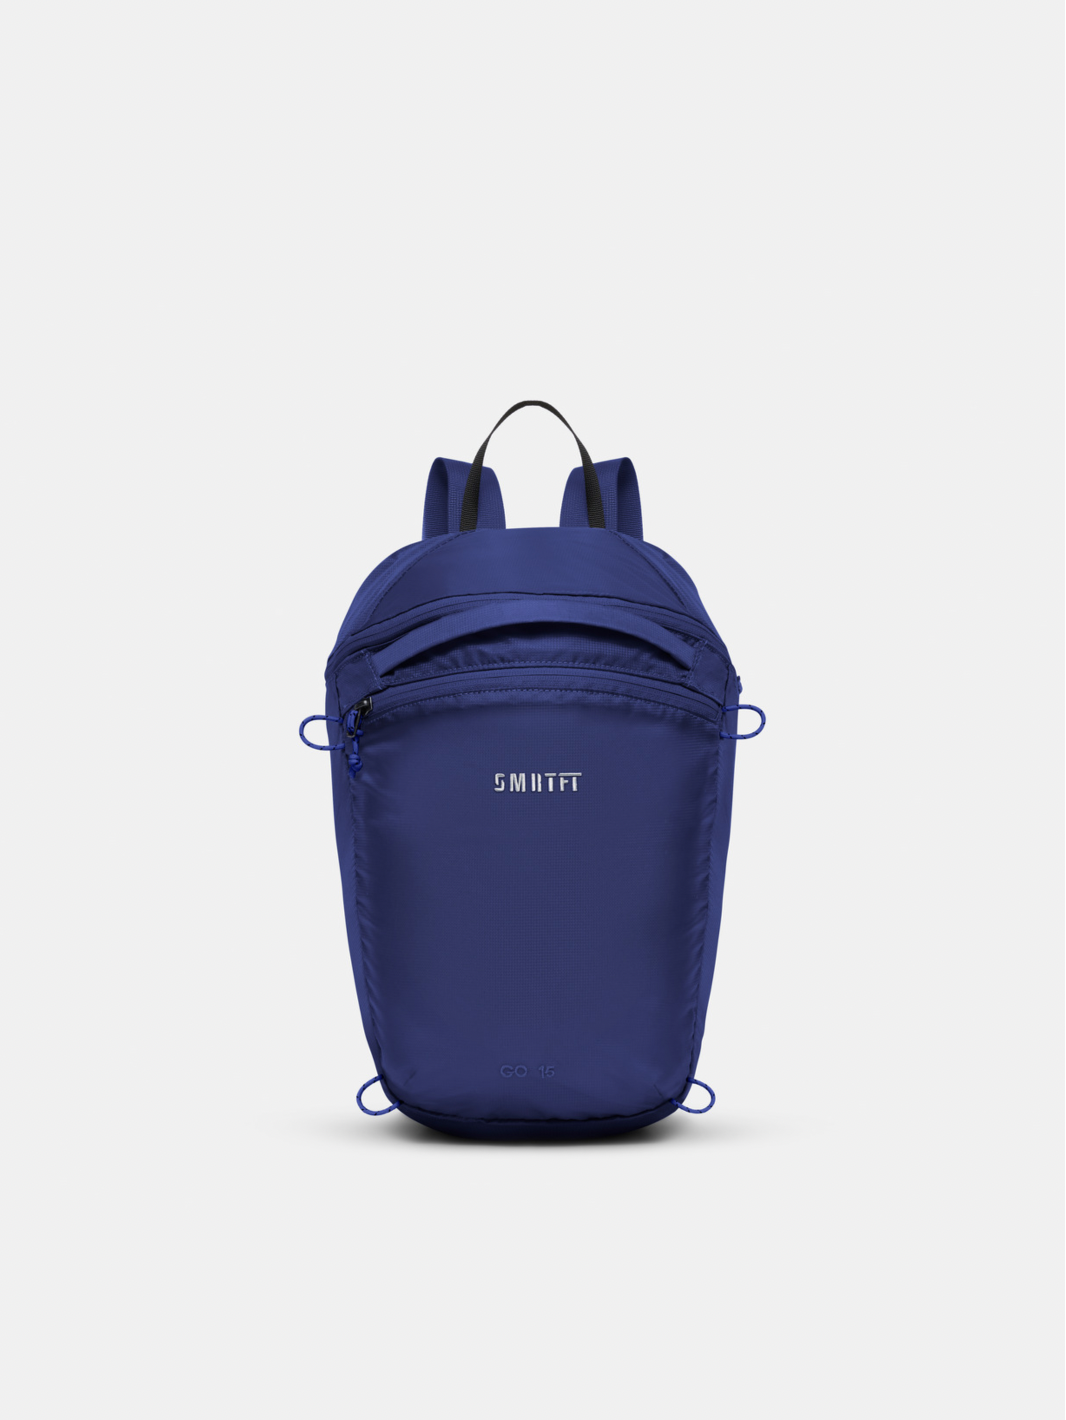 Blue Navy Backpack at SMRTFT | Blue Backpacks